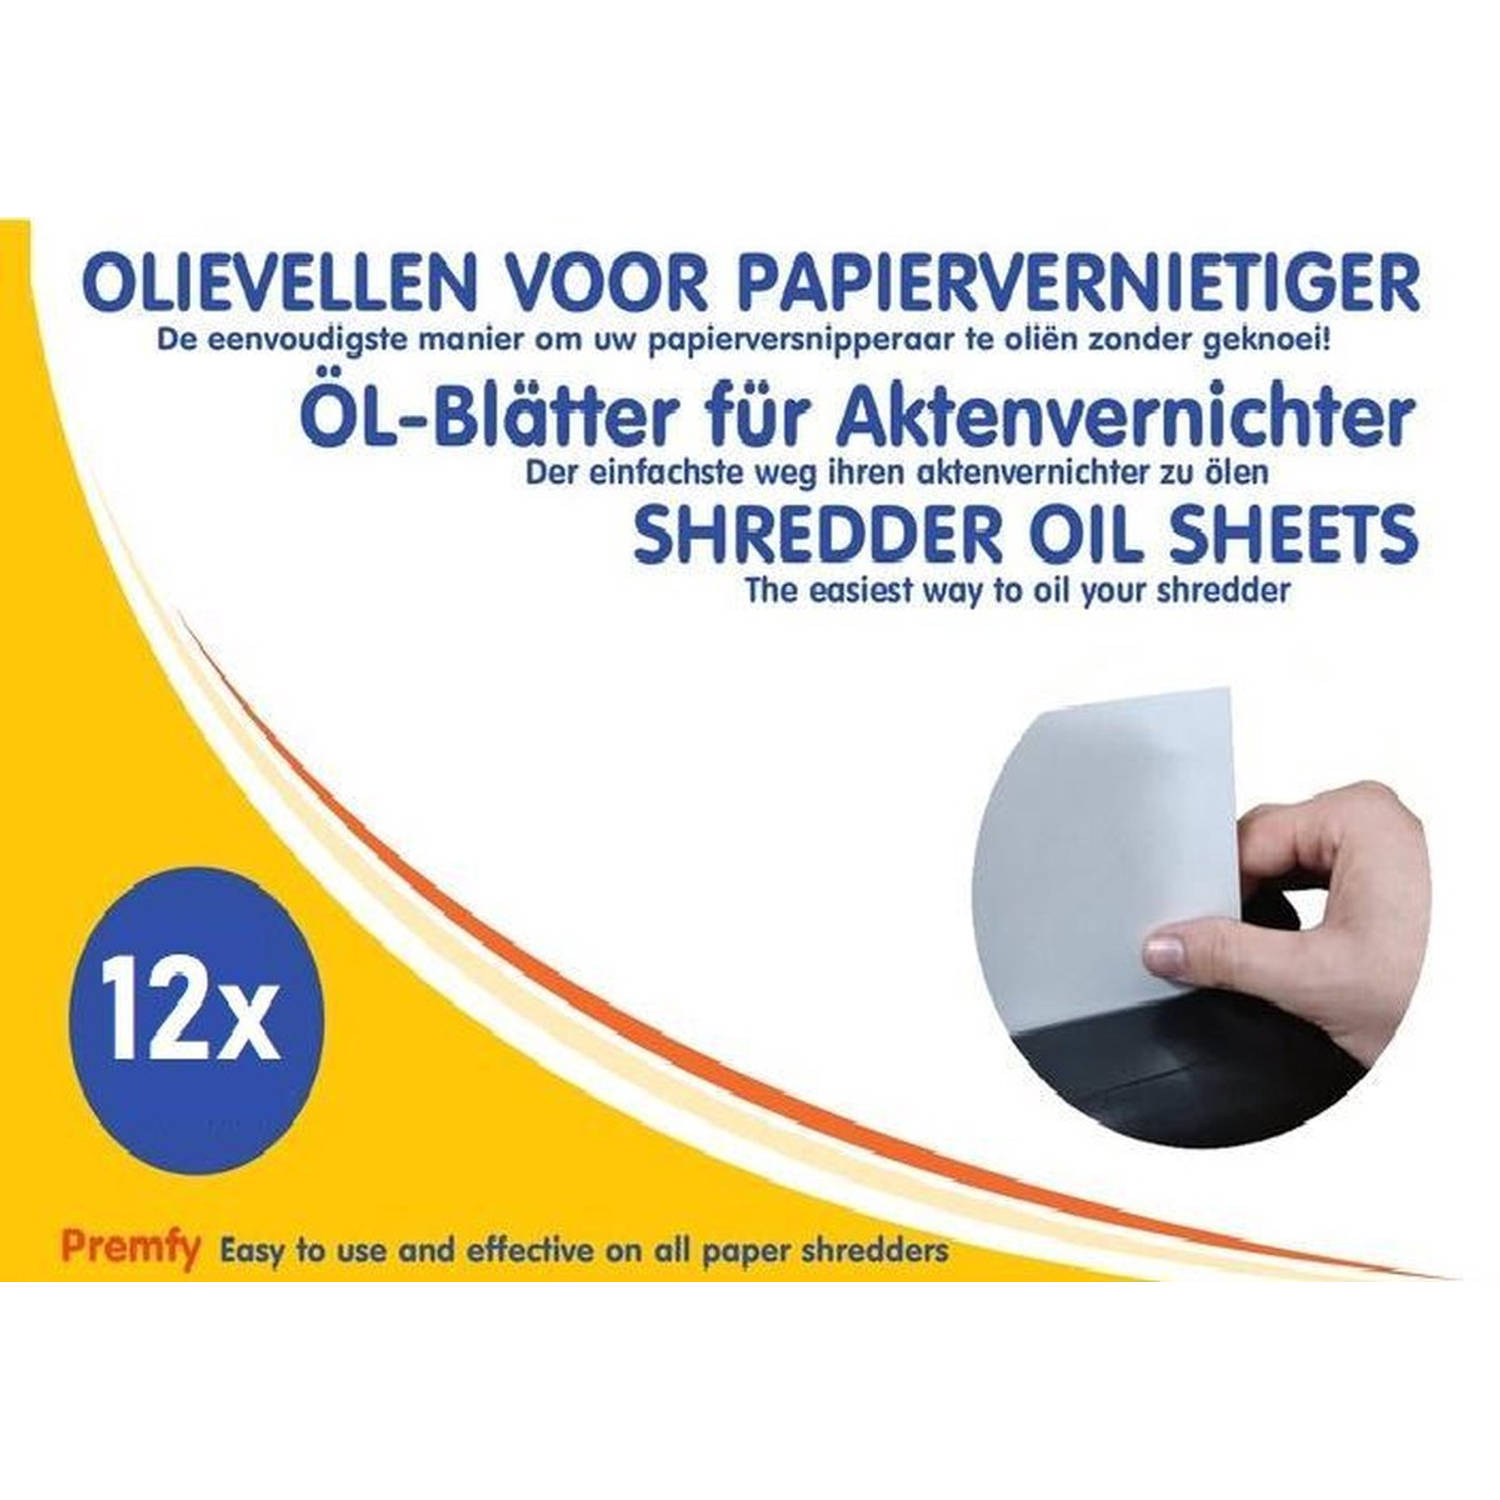 Premfy Olievellen voor papierversnipperaar 12 stuks-Papiervernietiger Olievellen Oil Sheets Shredder